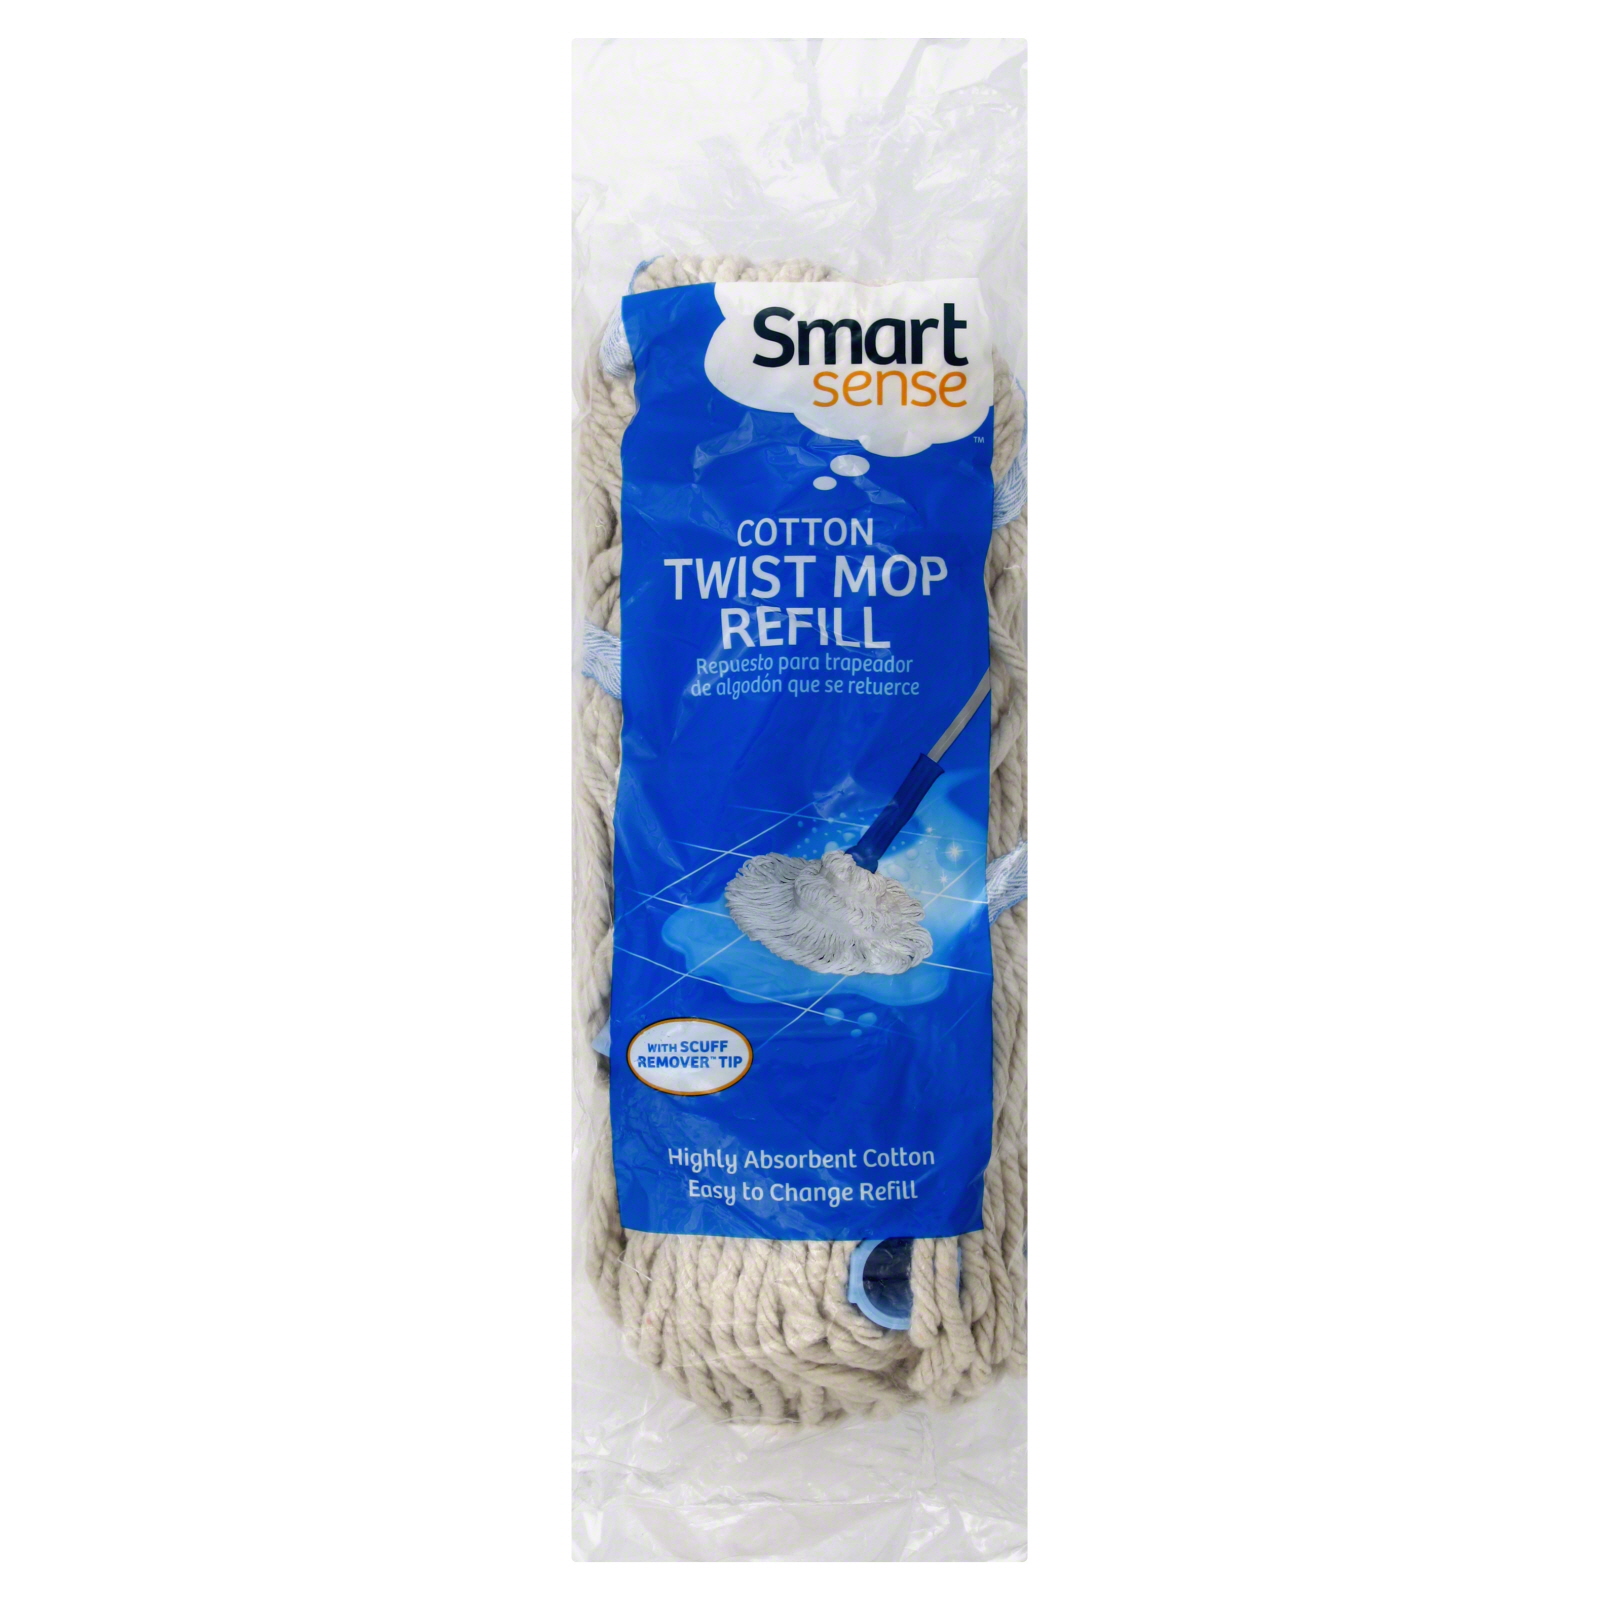 Smart Sense Twist Mop Refill, Cotton 1 refill